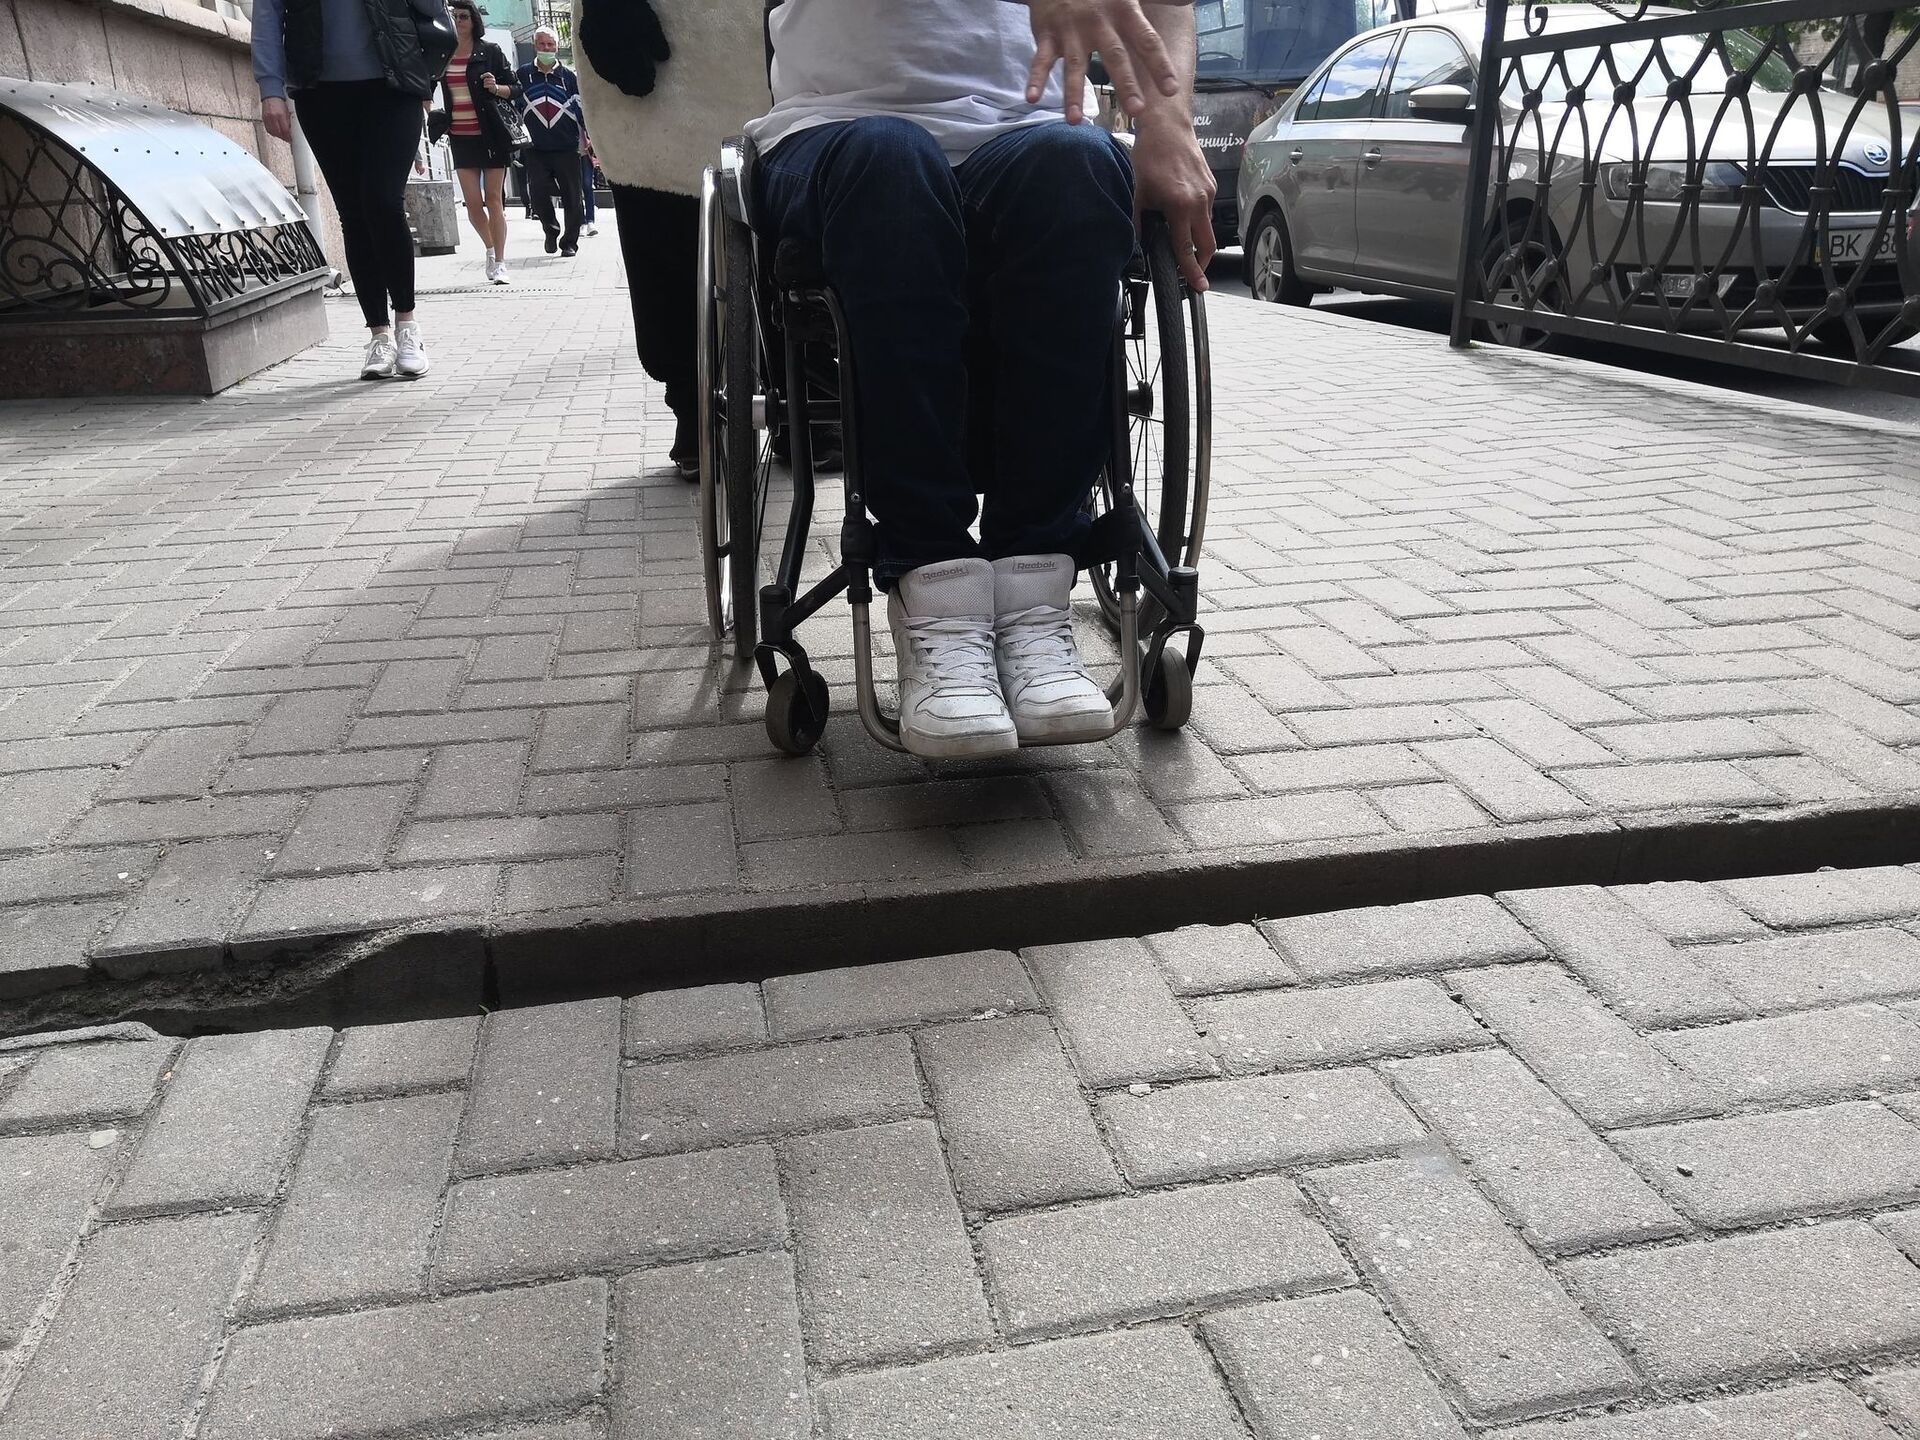 Центр міста. Тут не лише застрягають колеса візка, тут можна зламати собі ноги, каже   Дмитро Щебетюк.  Фото - Радіо Трек.